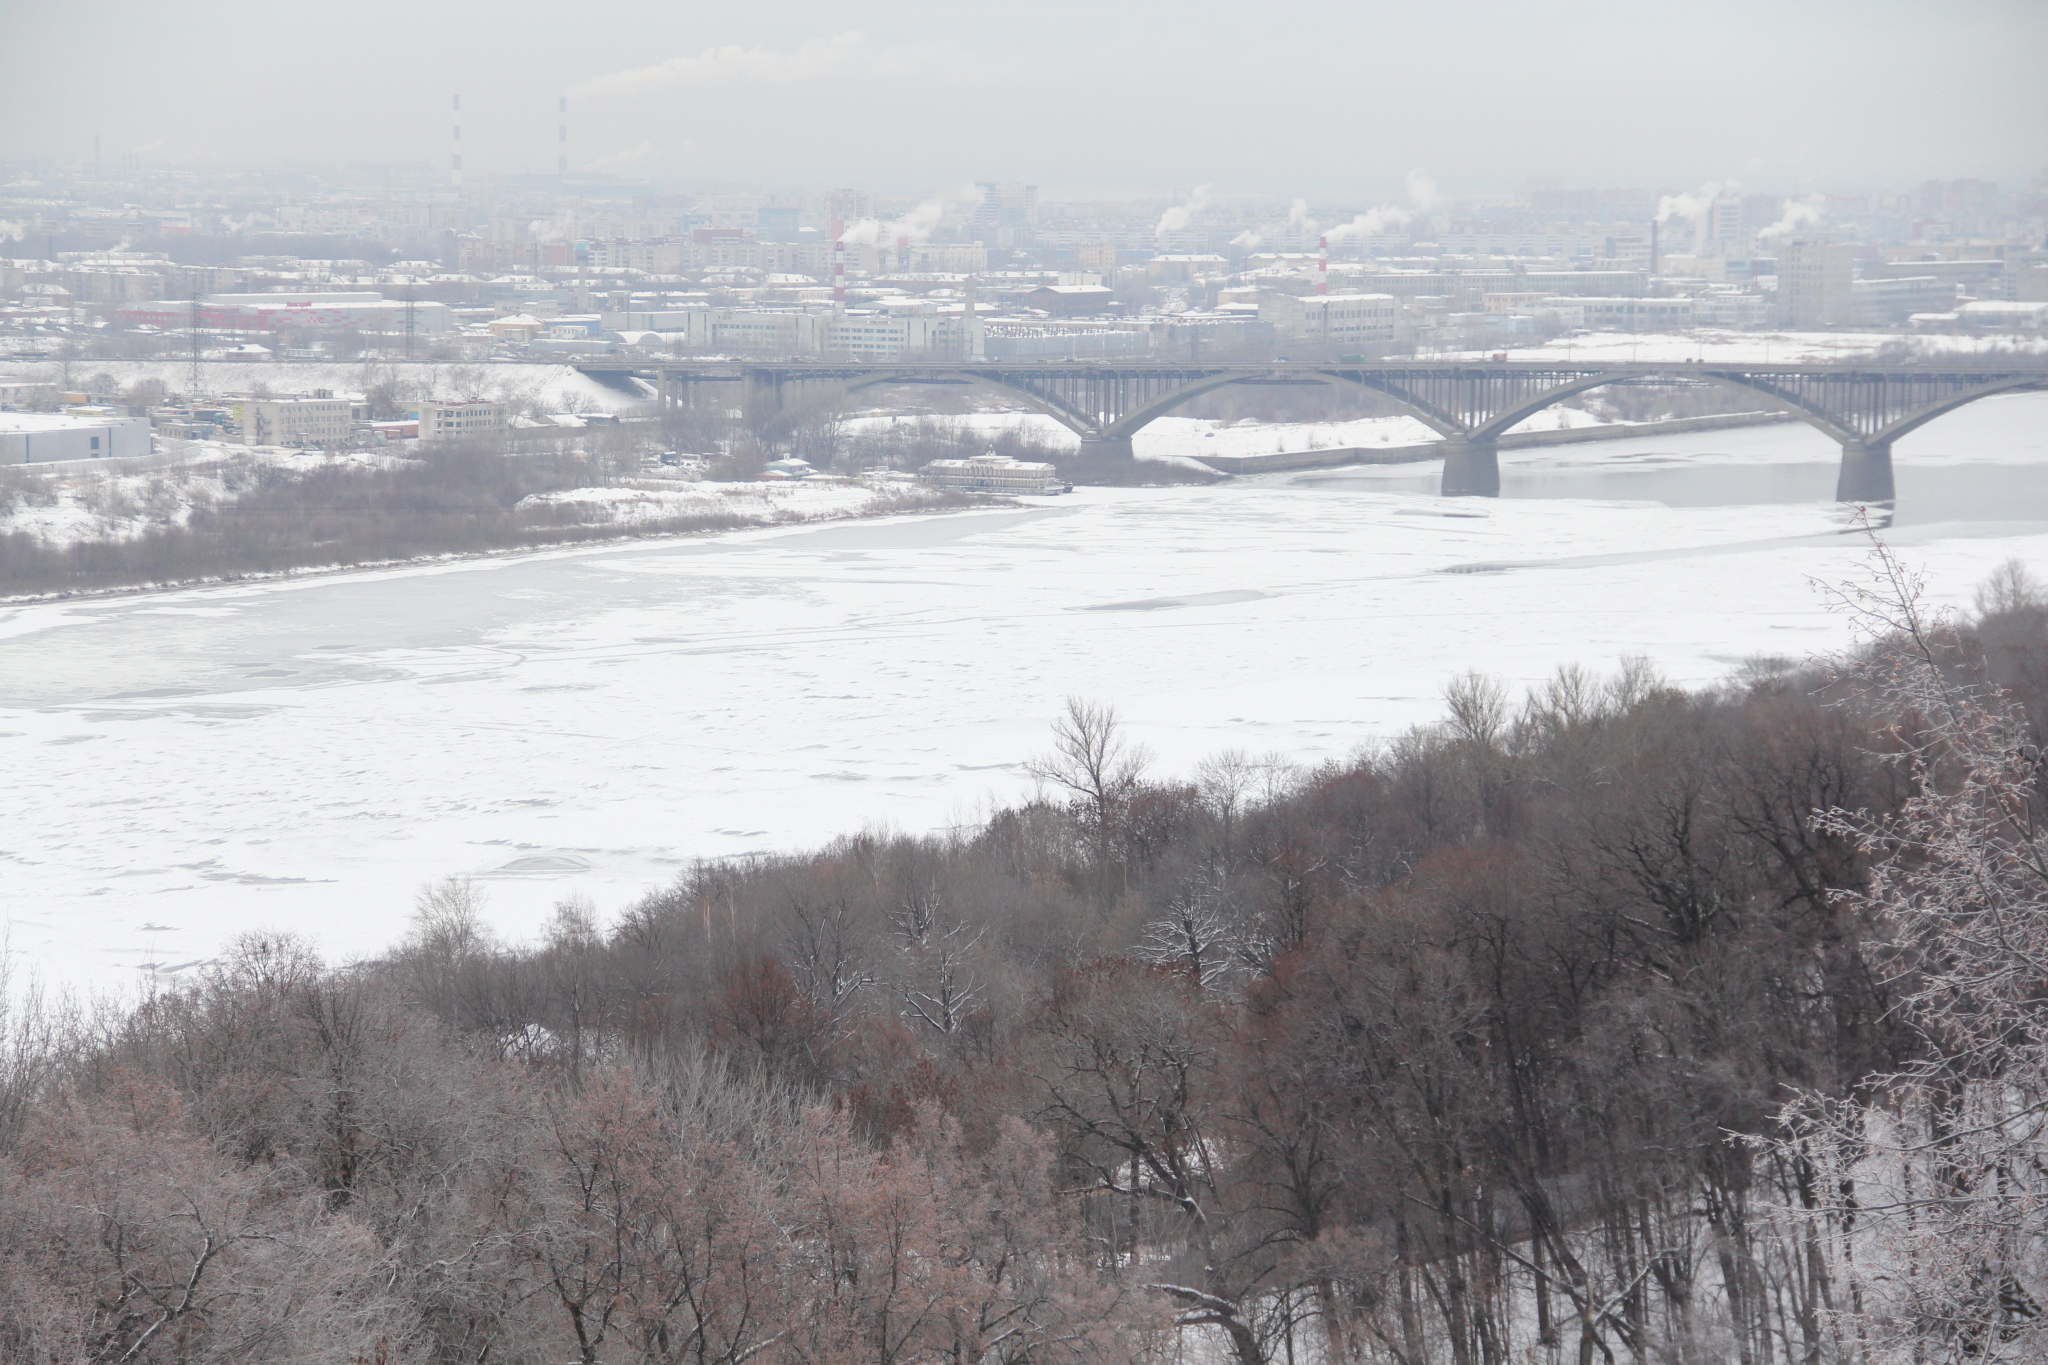 Источник сильного запаха газа в Нижнем Новгороде до сих пор не известен